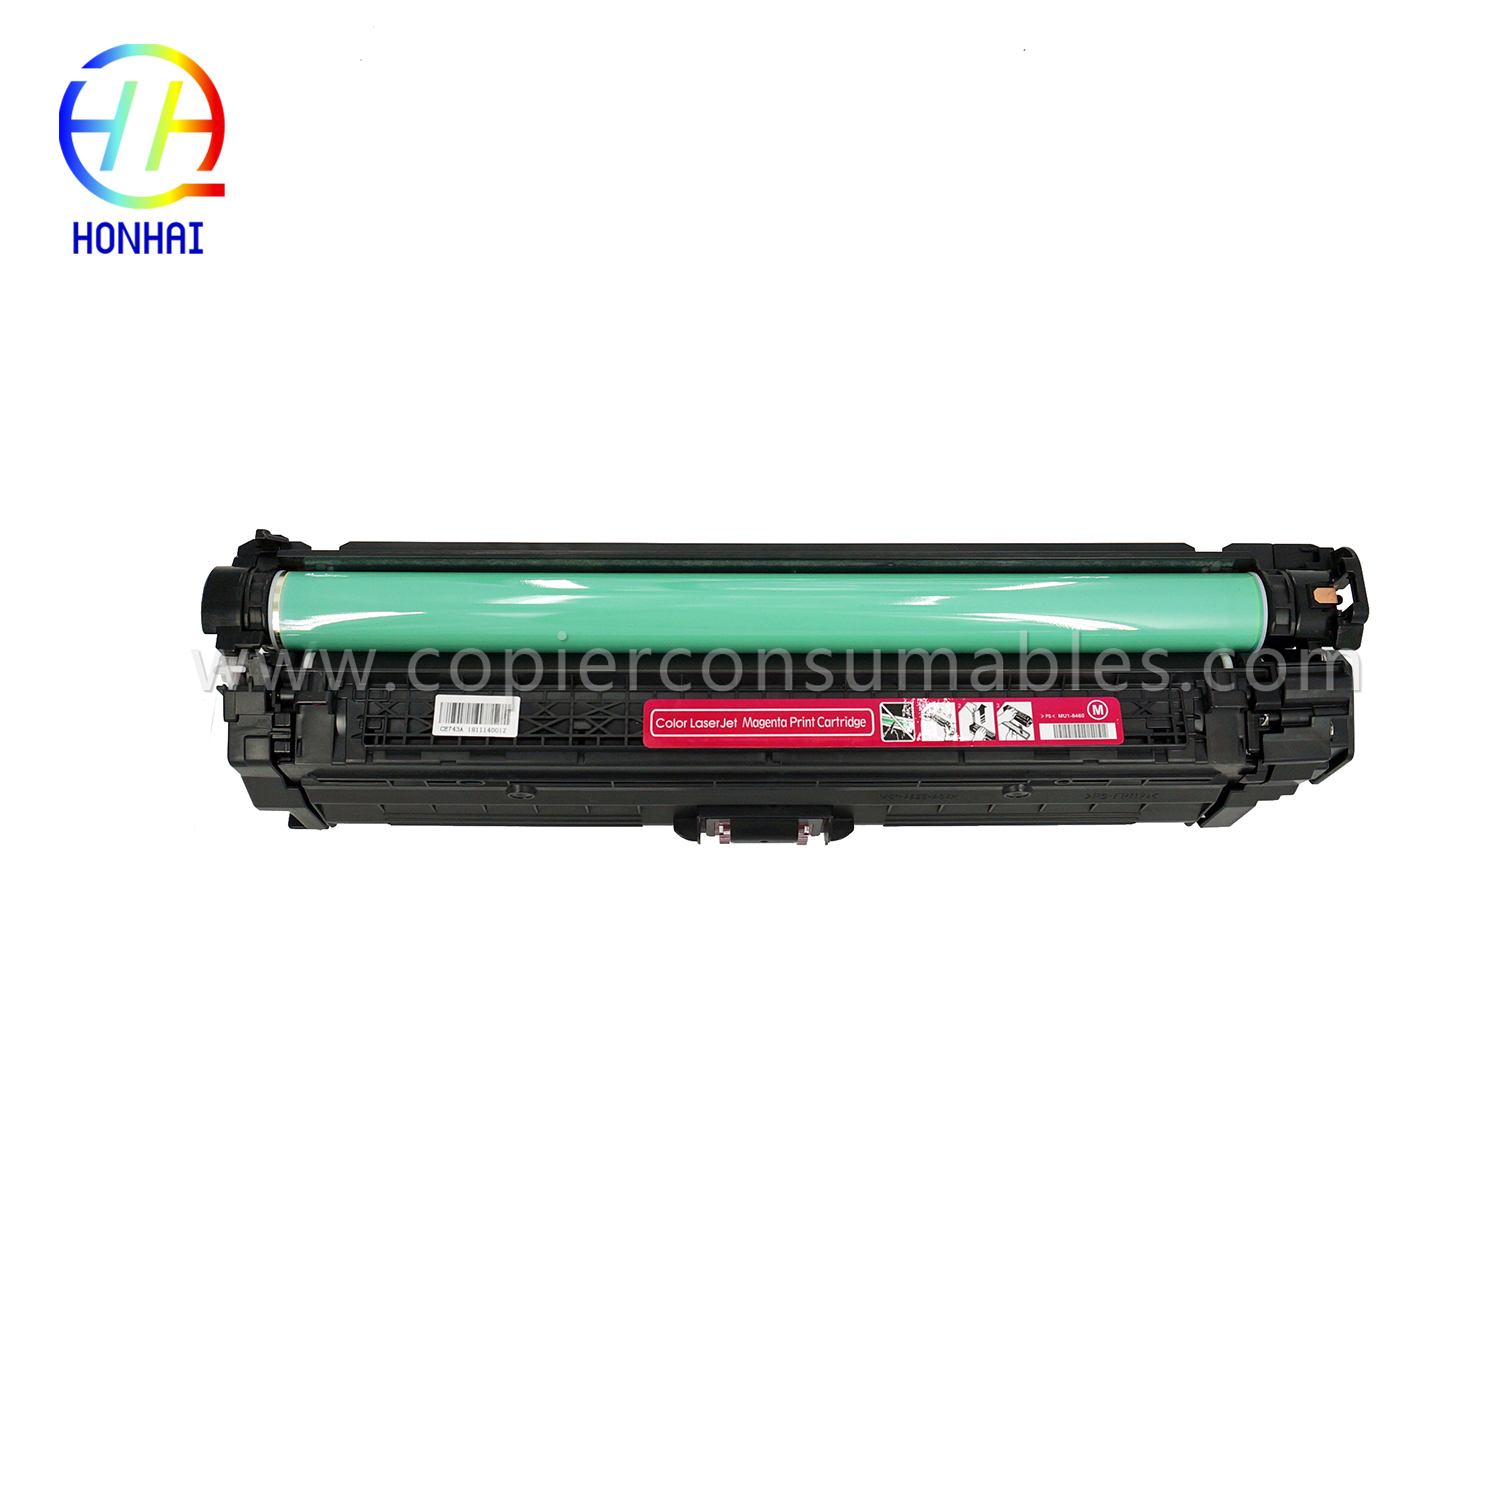 ប្រអប់ព្រីនធ័រសម្រាប់ HP Color LaserJet Pro CP5025 CP5220 CP5225 CE743A 307A